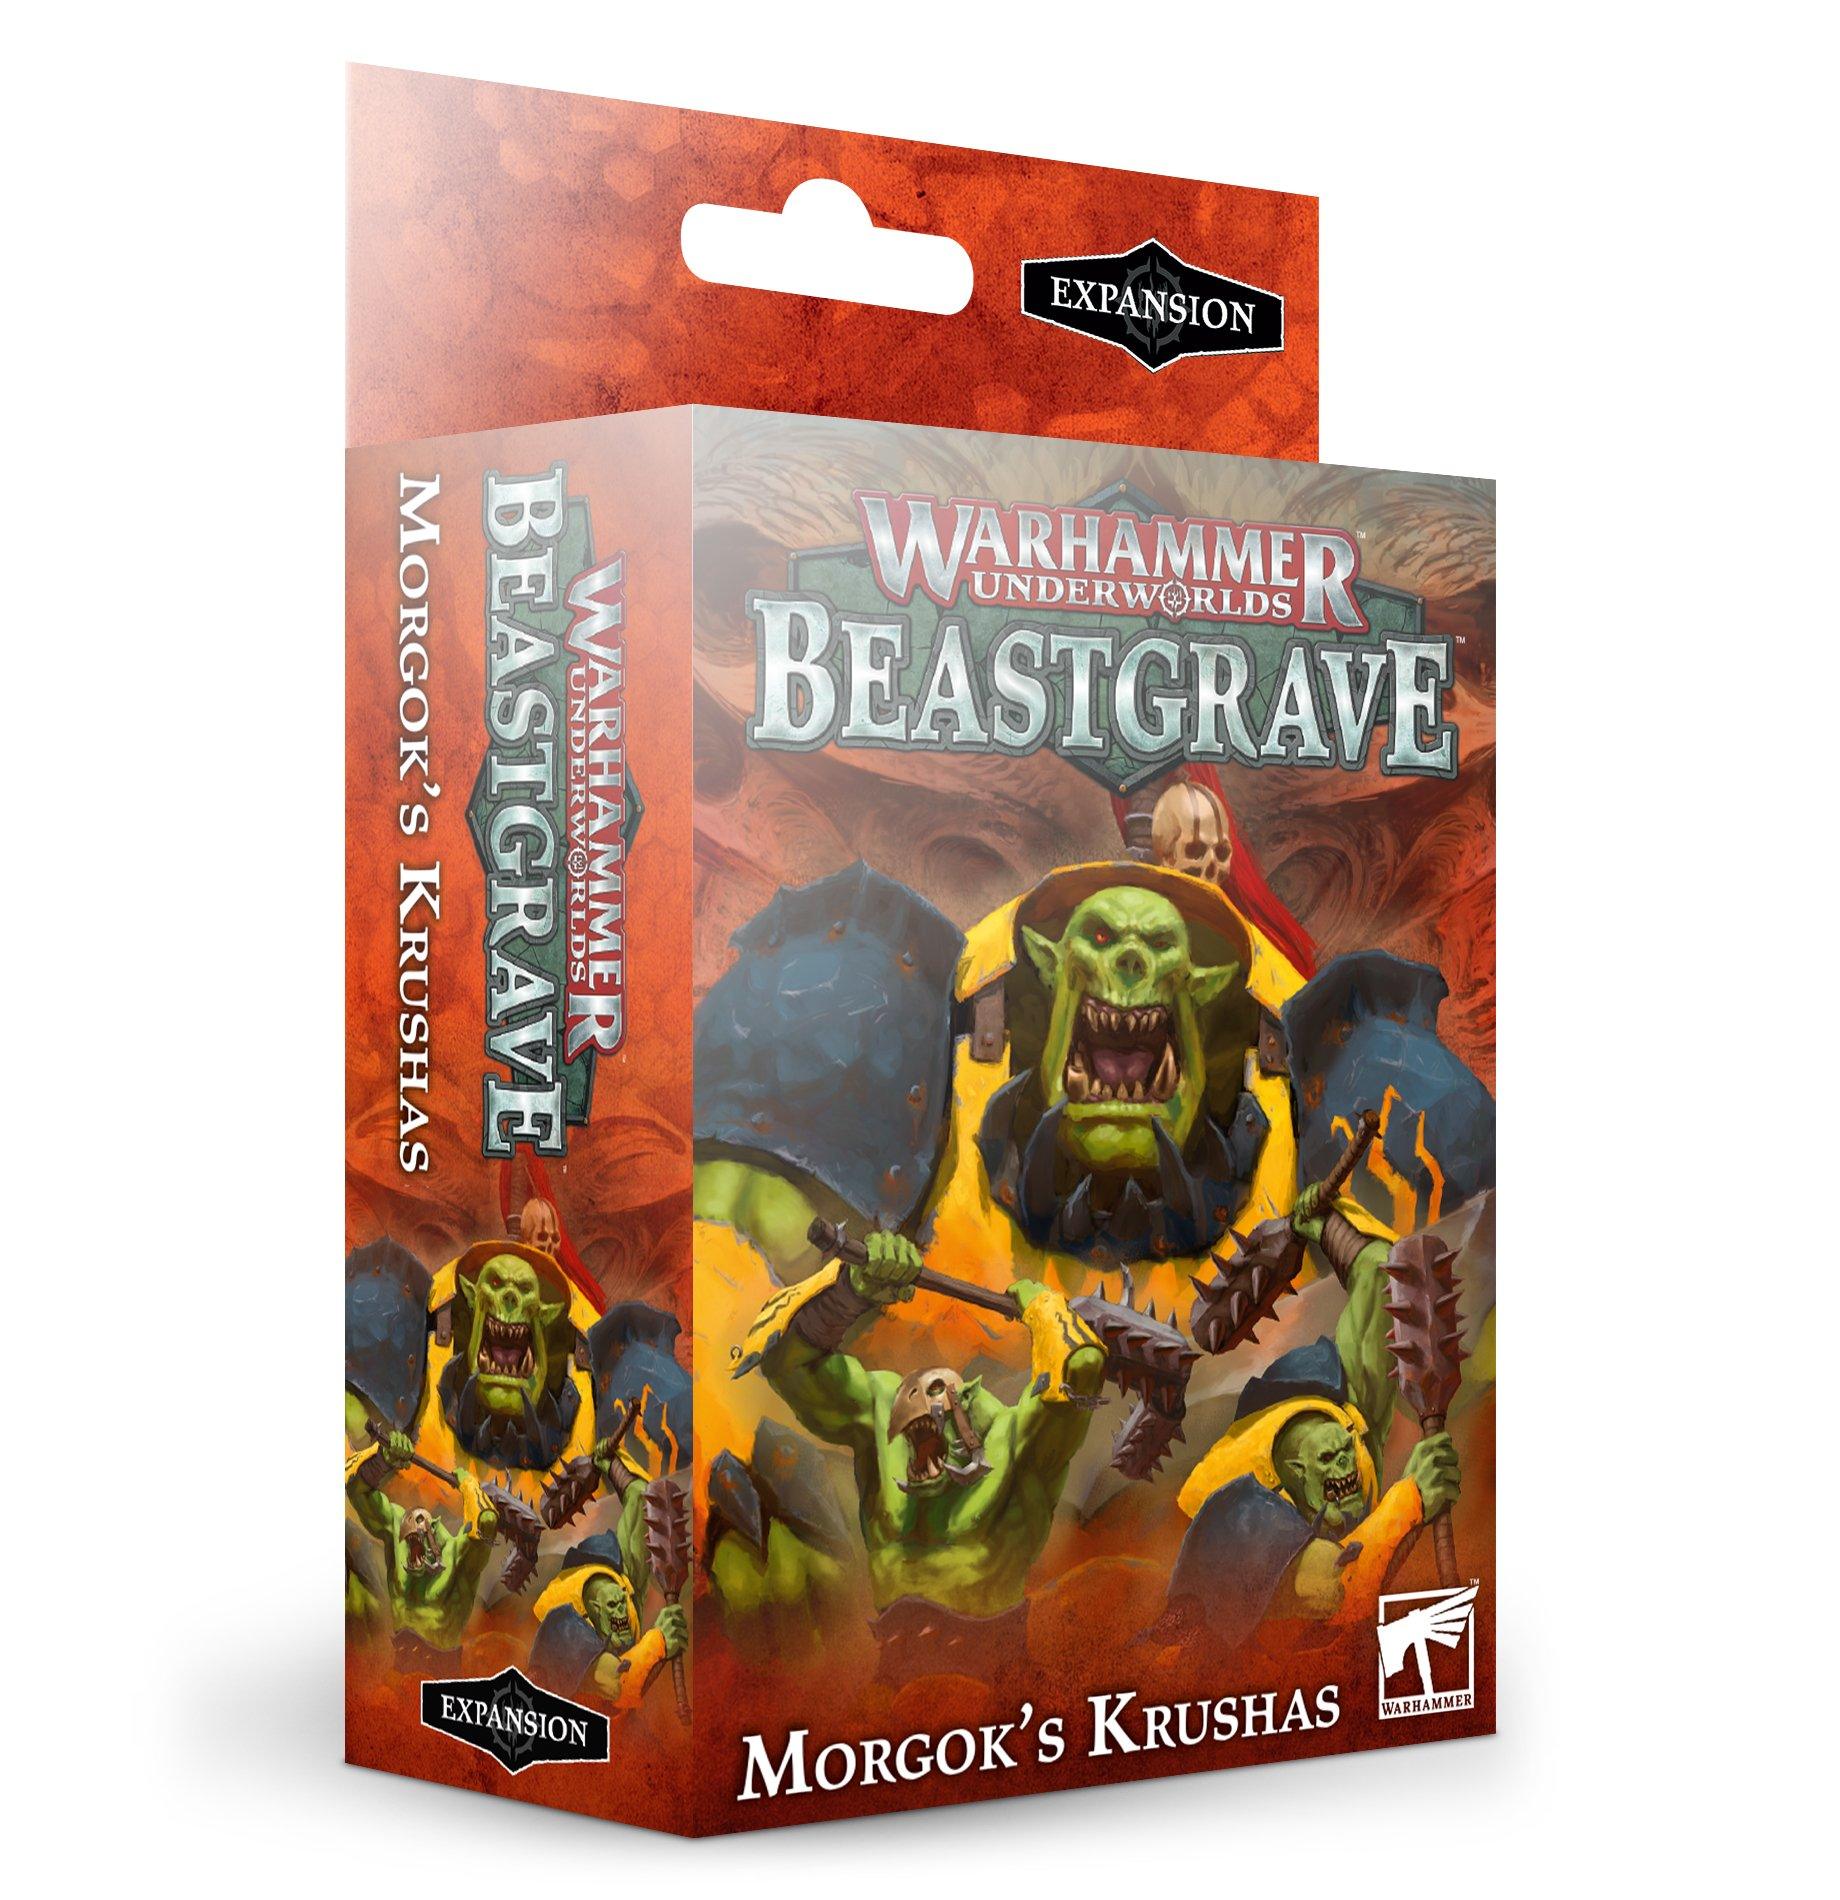 Warhammer Underworlds Beastgrave: Morgok's Krushas General Games Workshop 